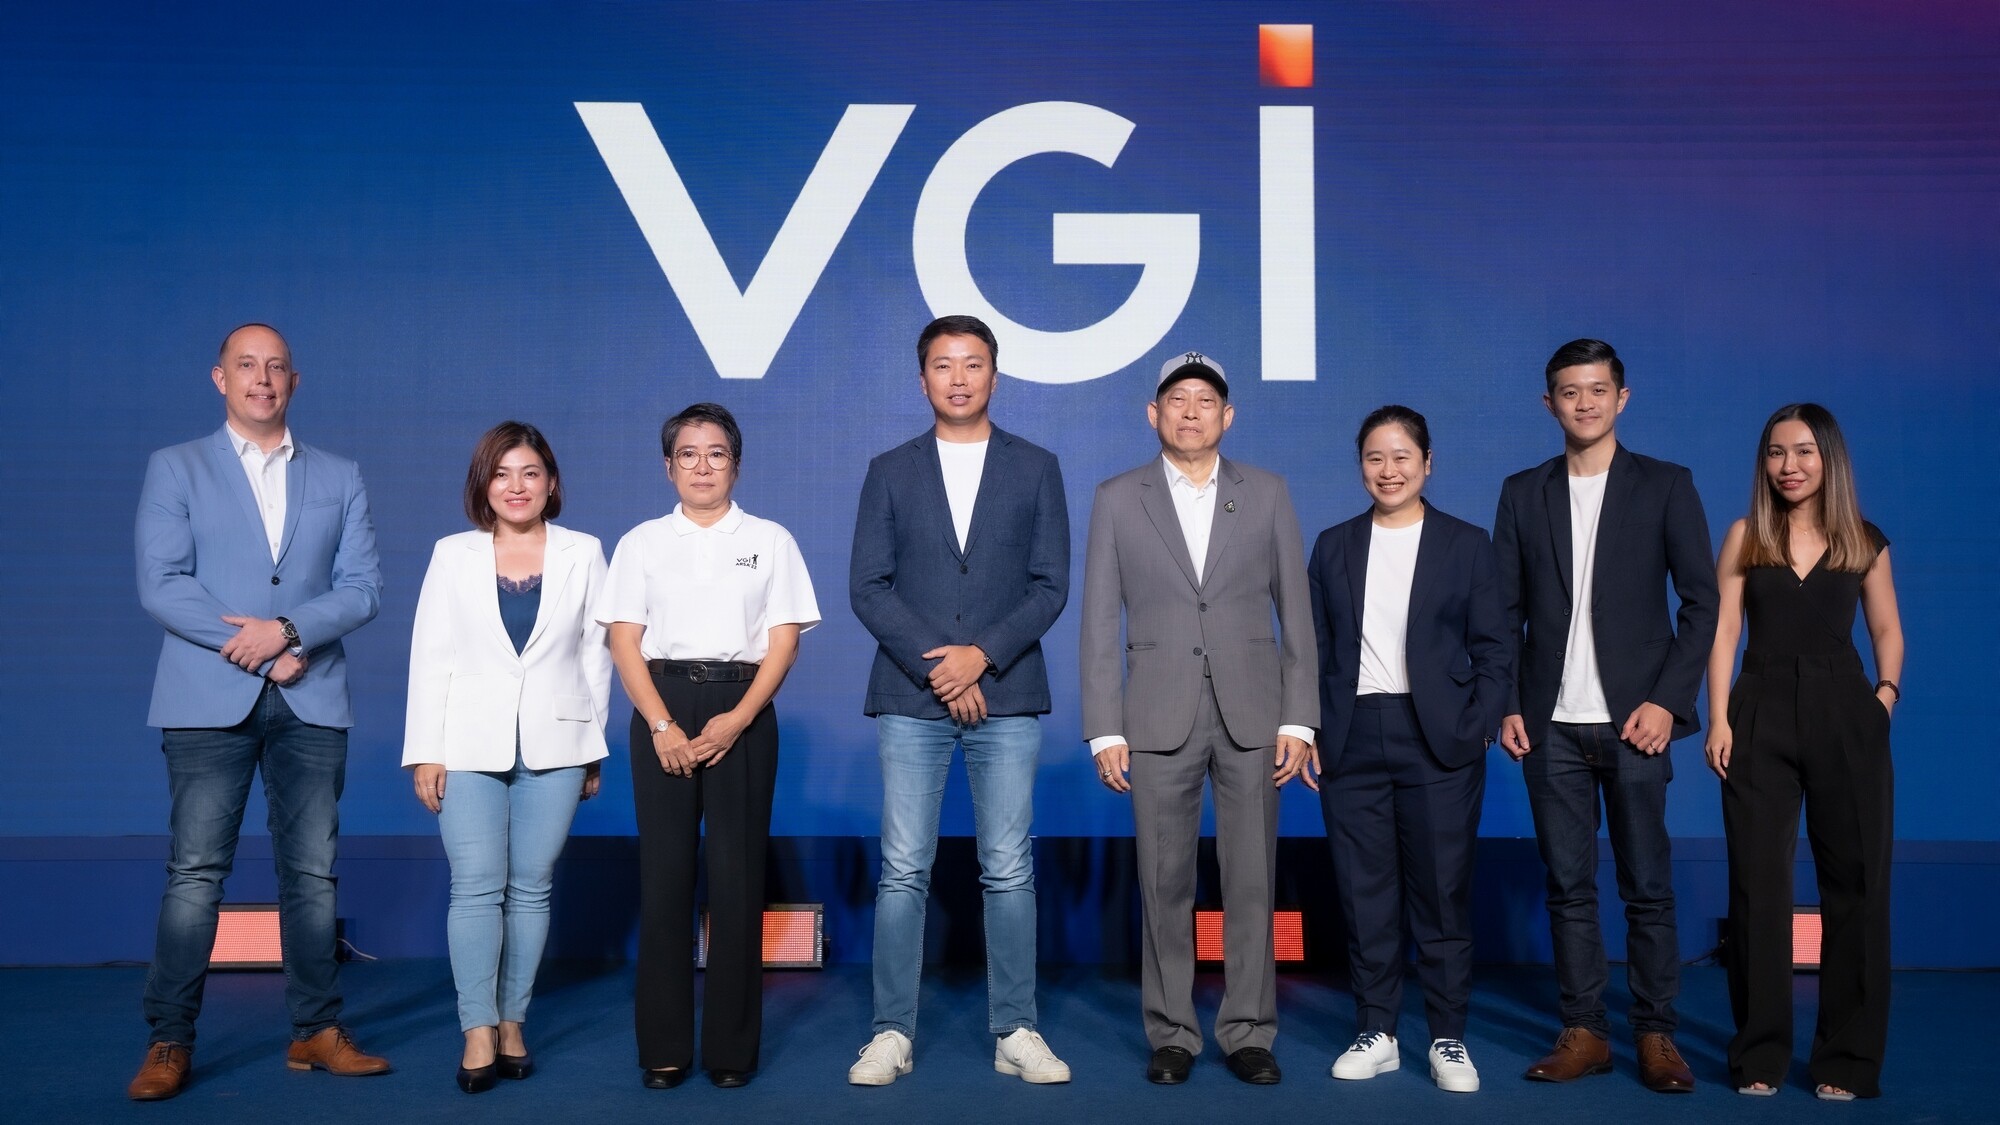 VGI เผยกลยุทธ์เจาะกลุ่มเป้าหมายที่ครอบคลุมและคุ้มค่ากว่าเดิม ผ่าน O2O Marketing Solutions ในงาน "V Experience" Day